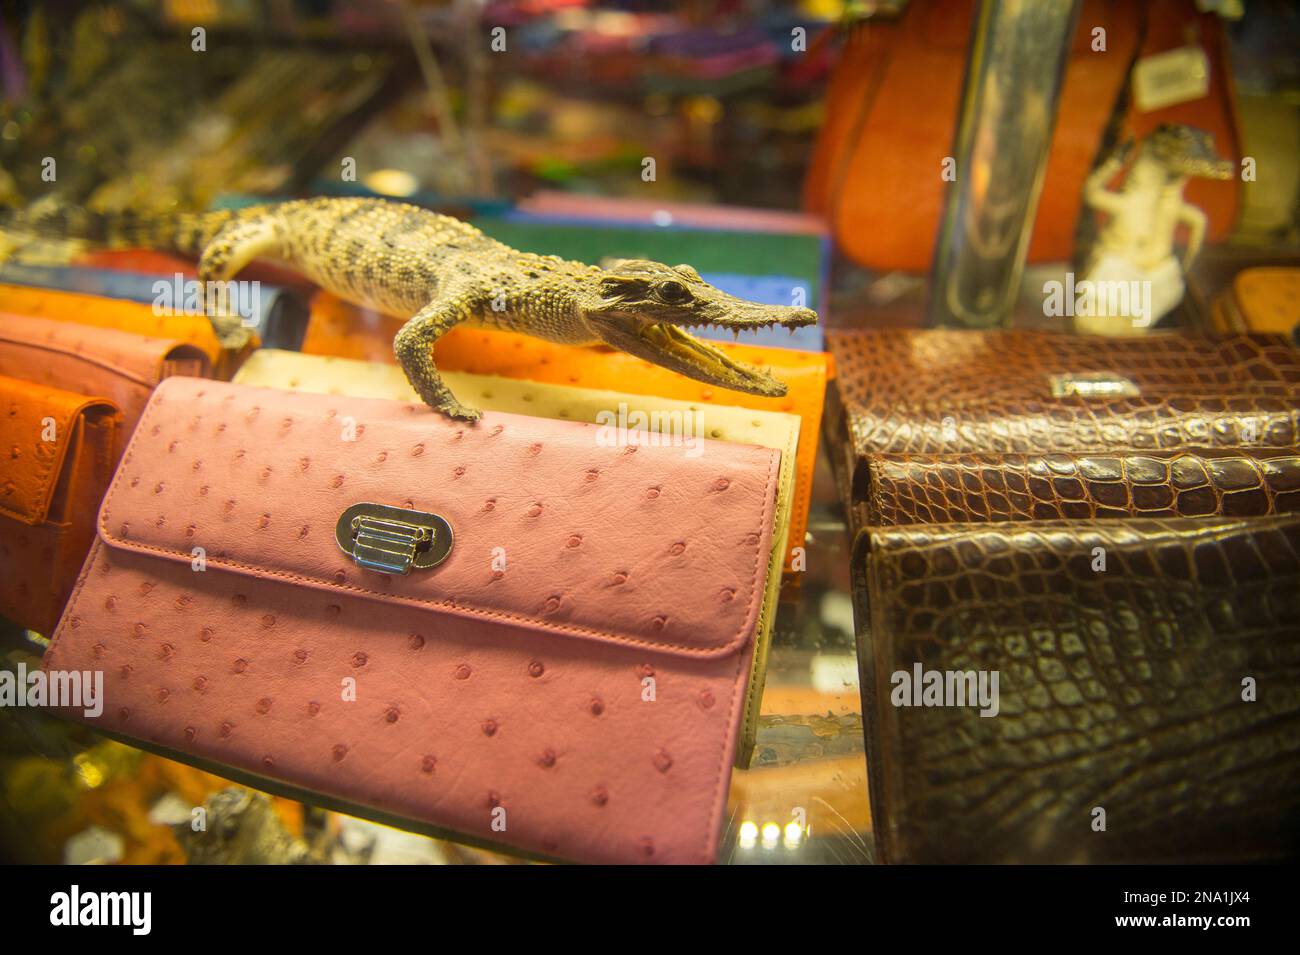 Souvenirs aus Krokodilarten werden am Flughafen Hanoi in Vietnam verkauft Stockfoto